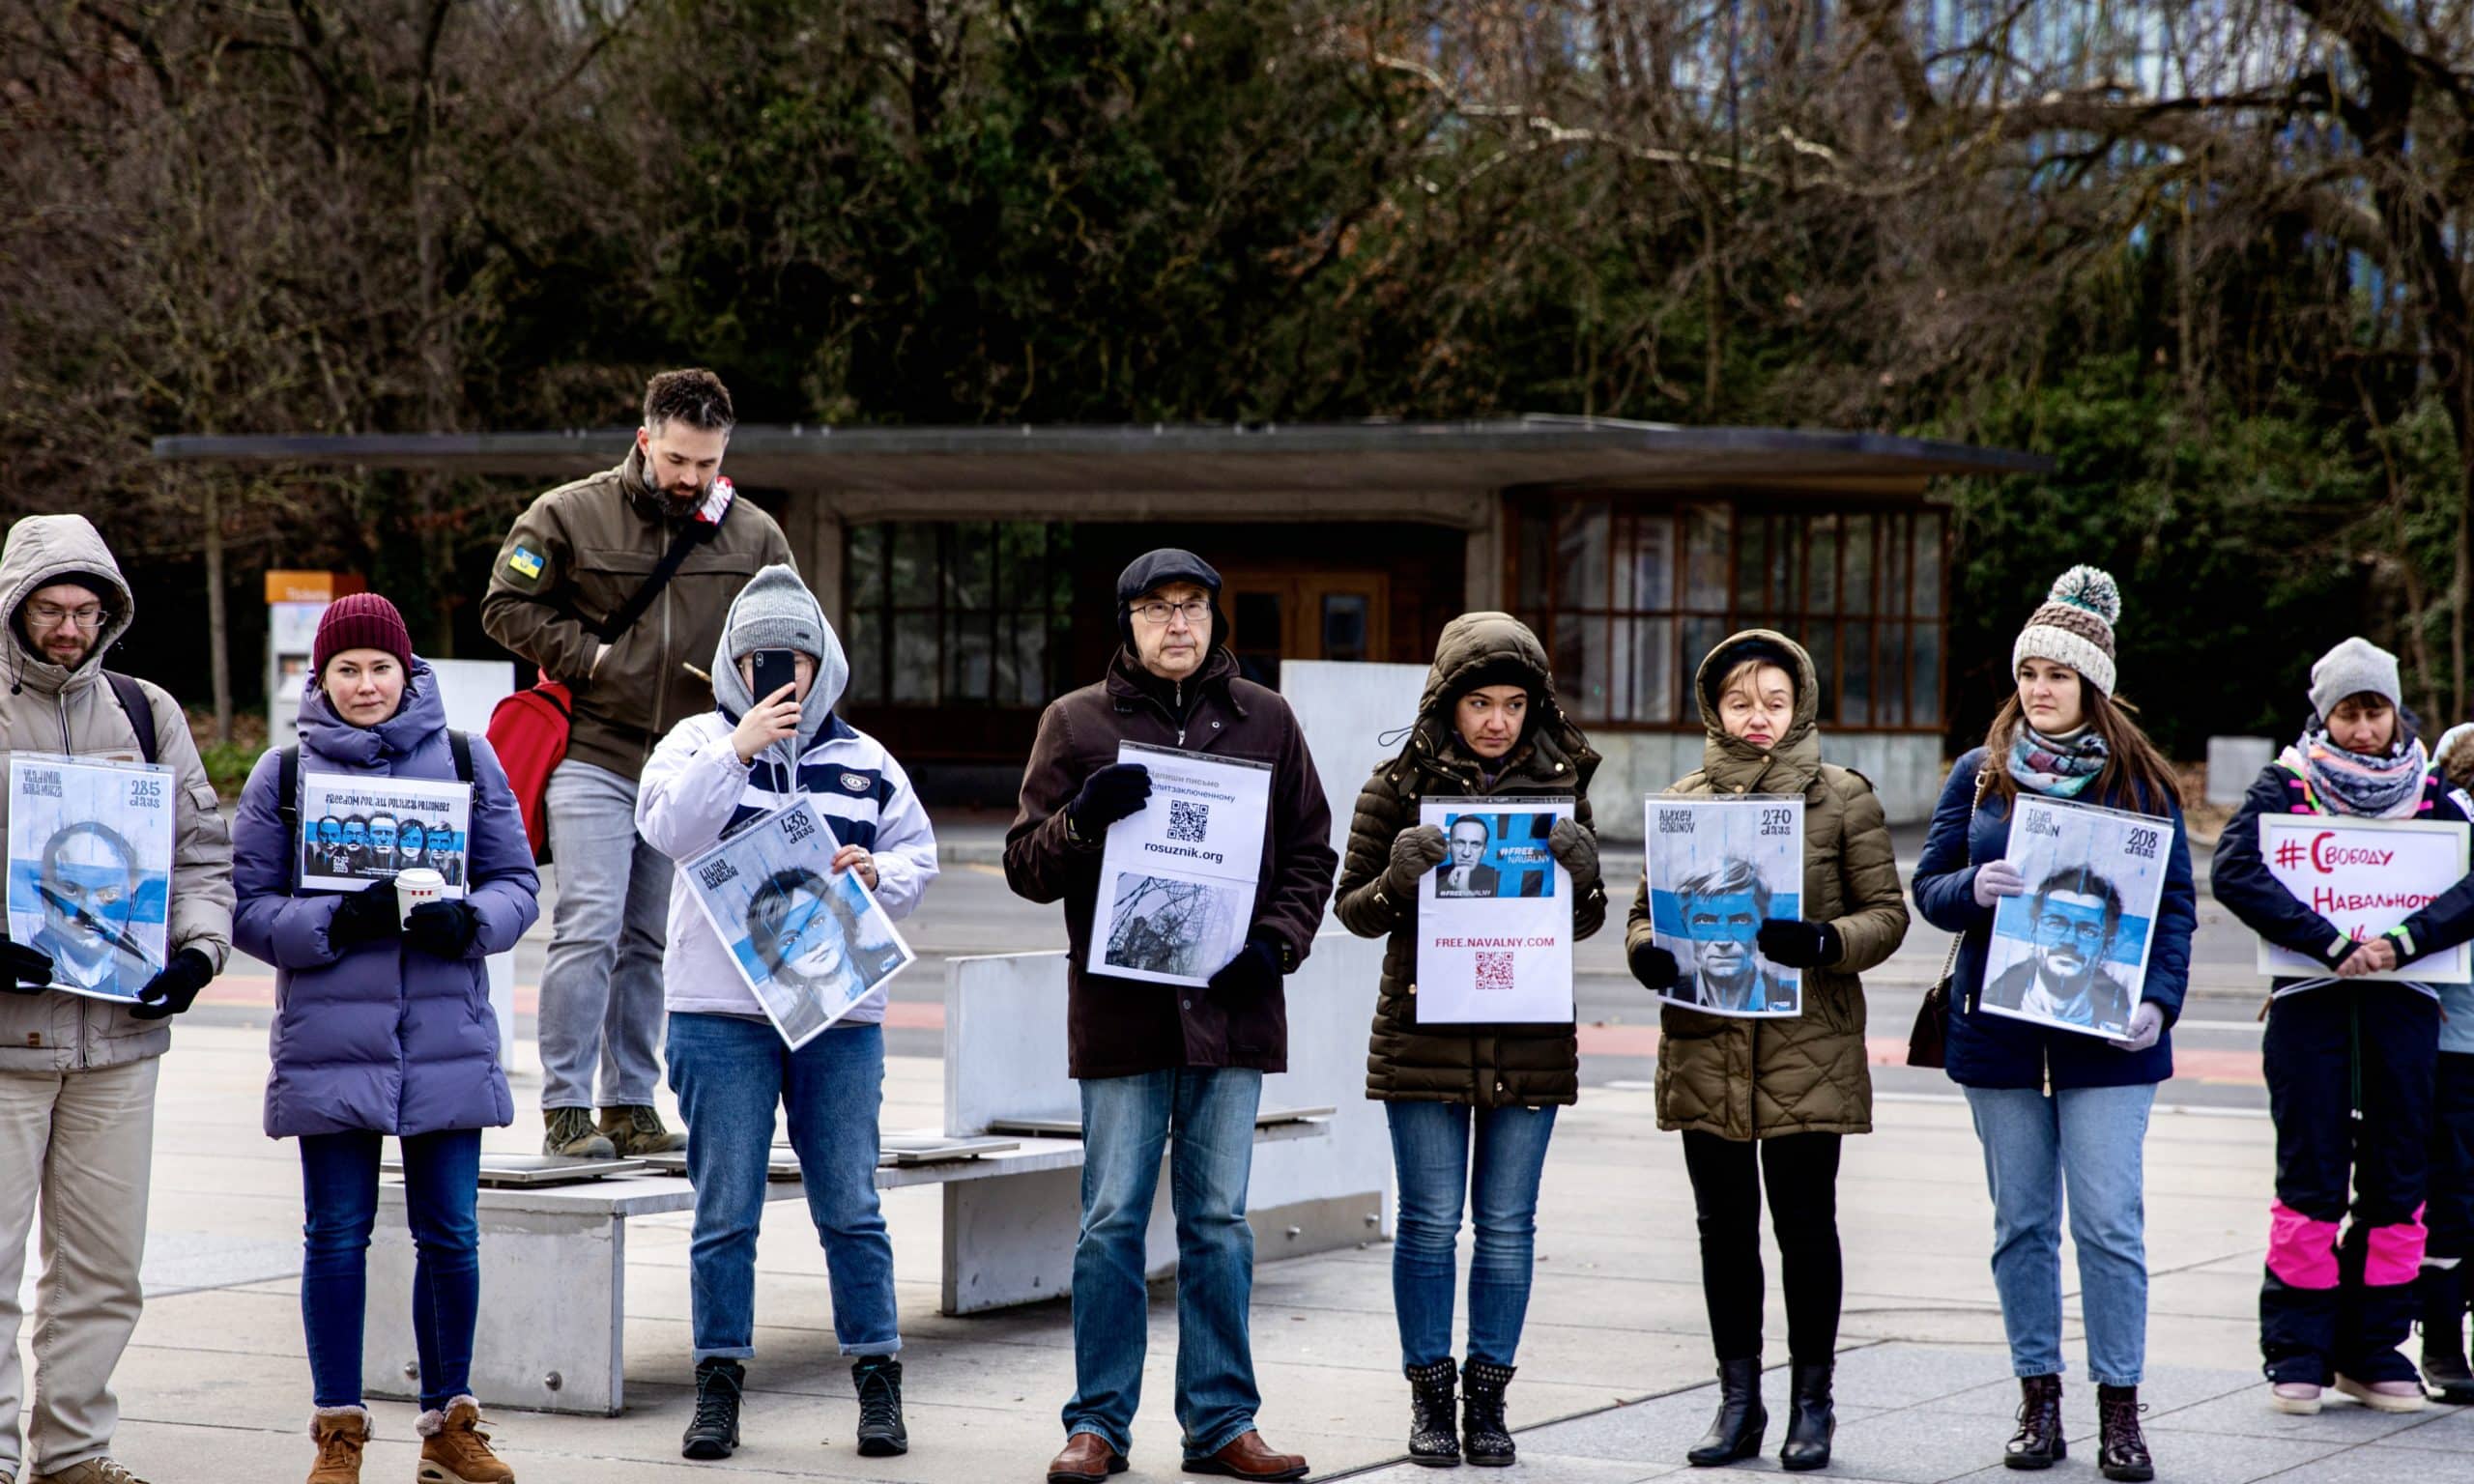 Митинг солидарности «Свободу Навальному и всем политическим заключенным!». Женева, 22 января 2022 г. (© Александр Бучок)